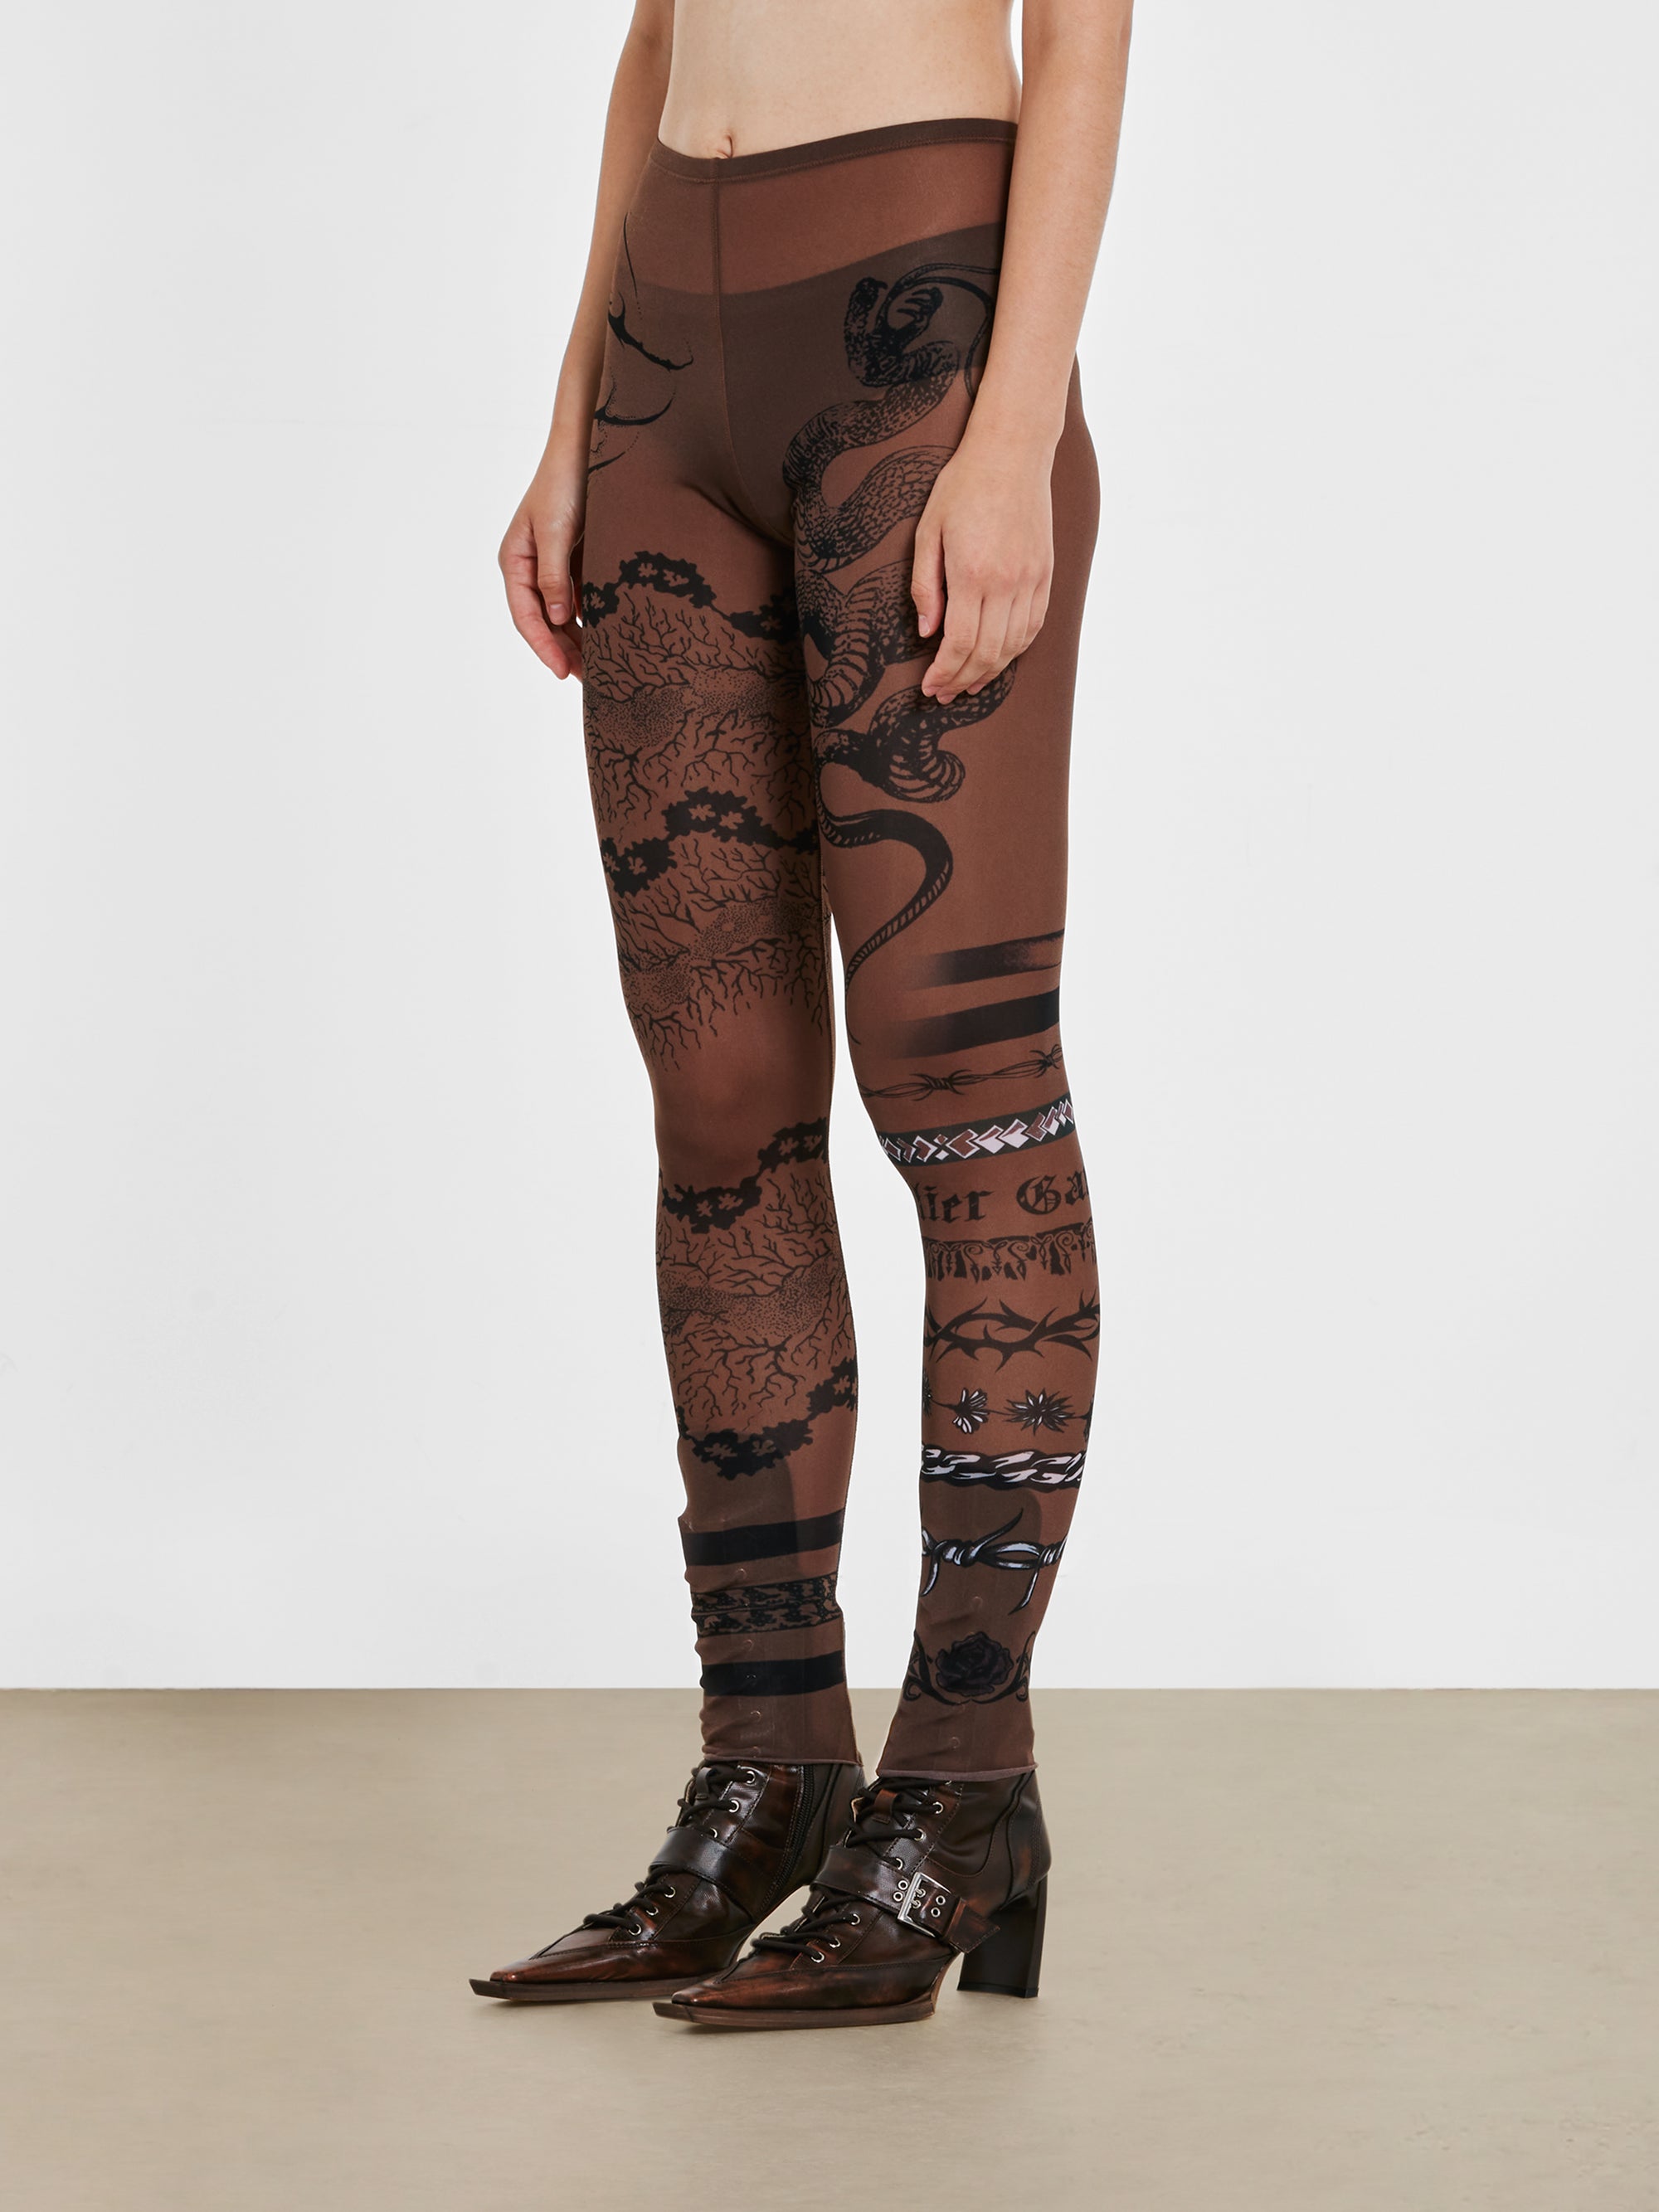 Jean Paul Gaultier - KNWLS Women’s Trompe L’Oeil Tattoo Print Leggings - (Ebony/Grey/Black) view 1